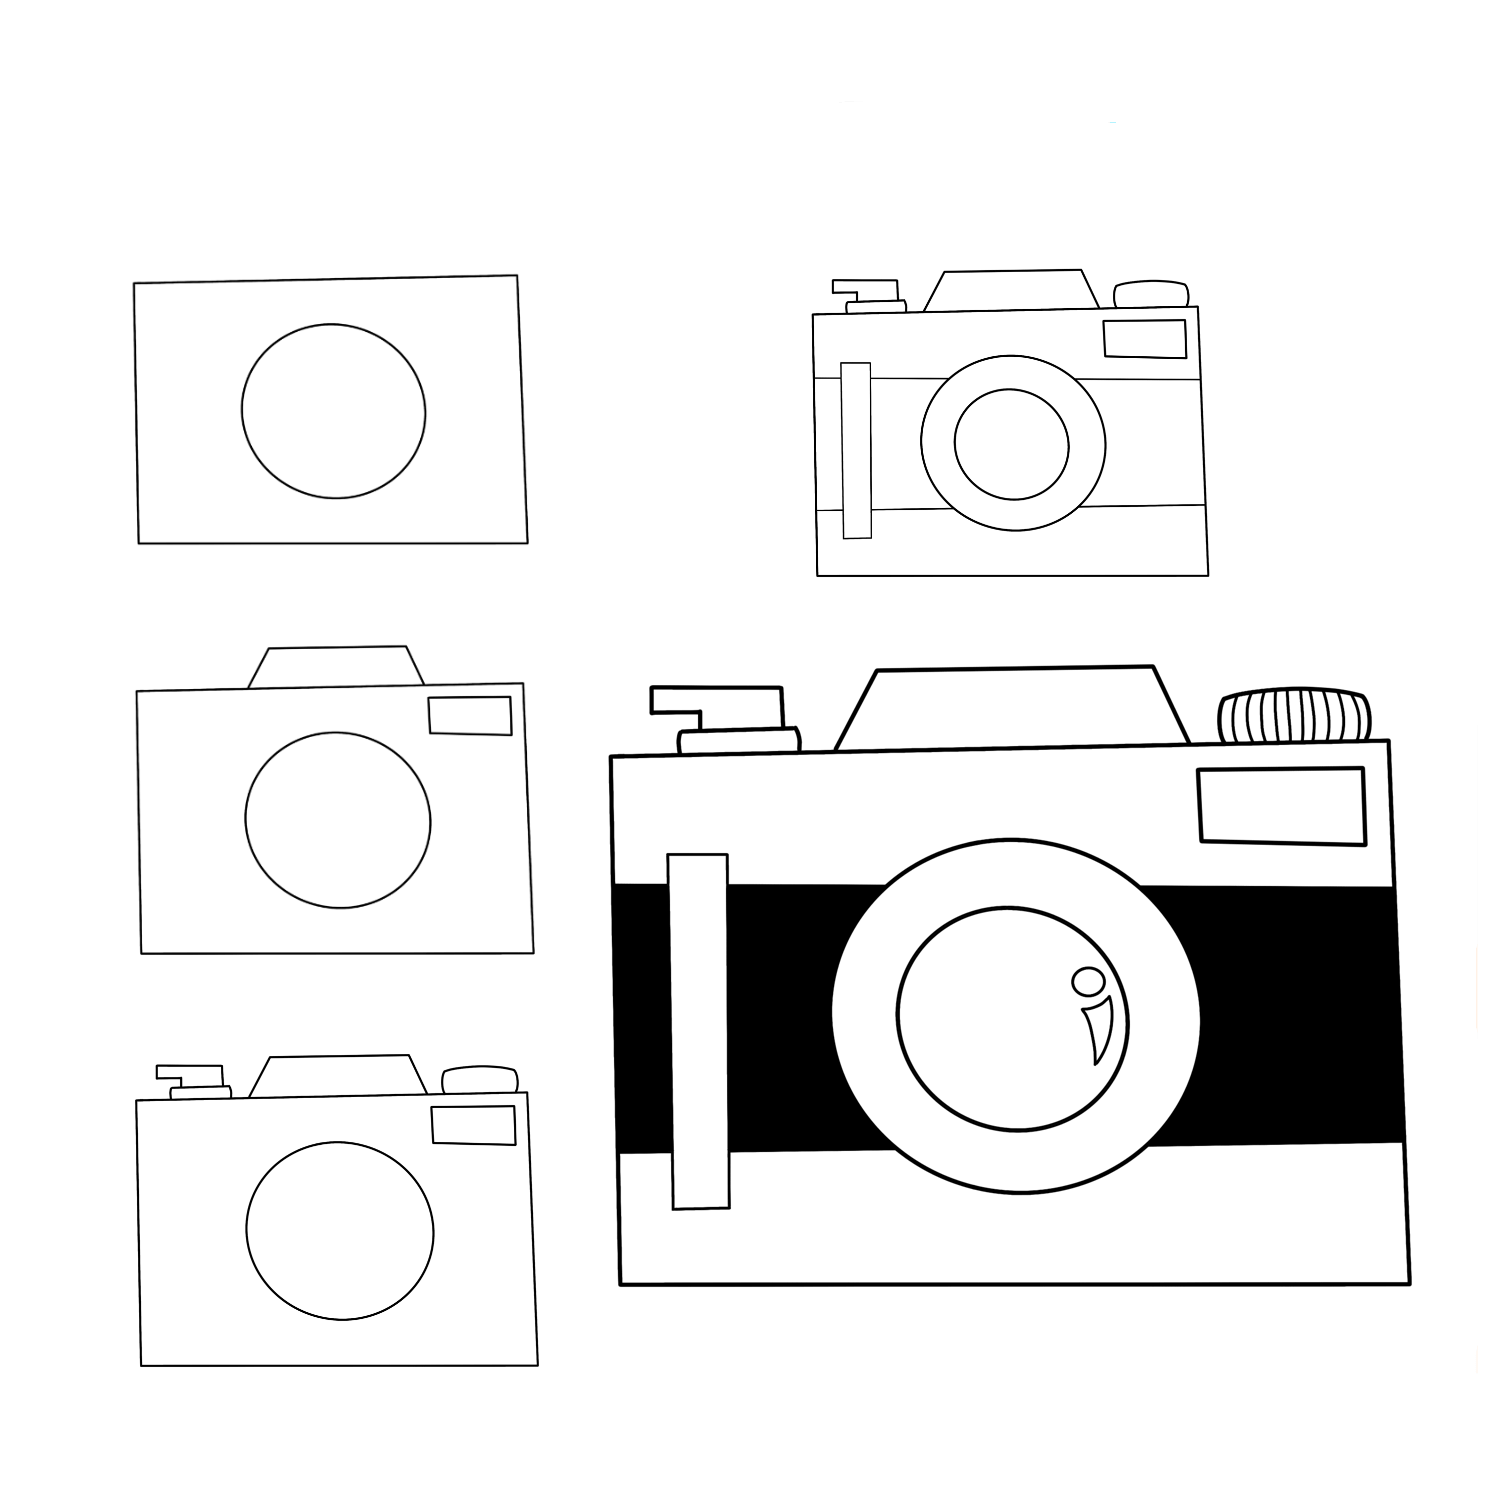 Basit bir kamera çizimi (3) çizimi